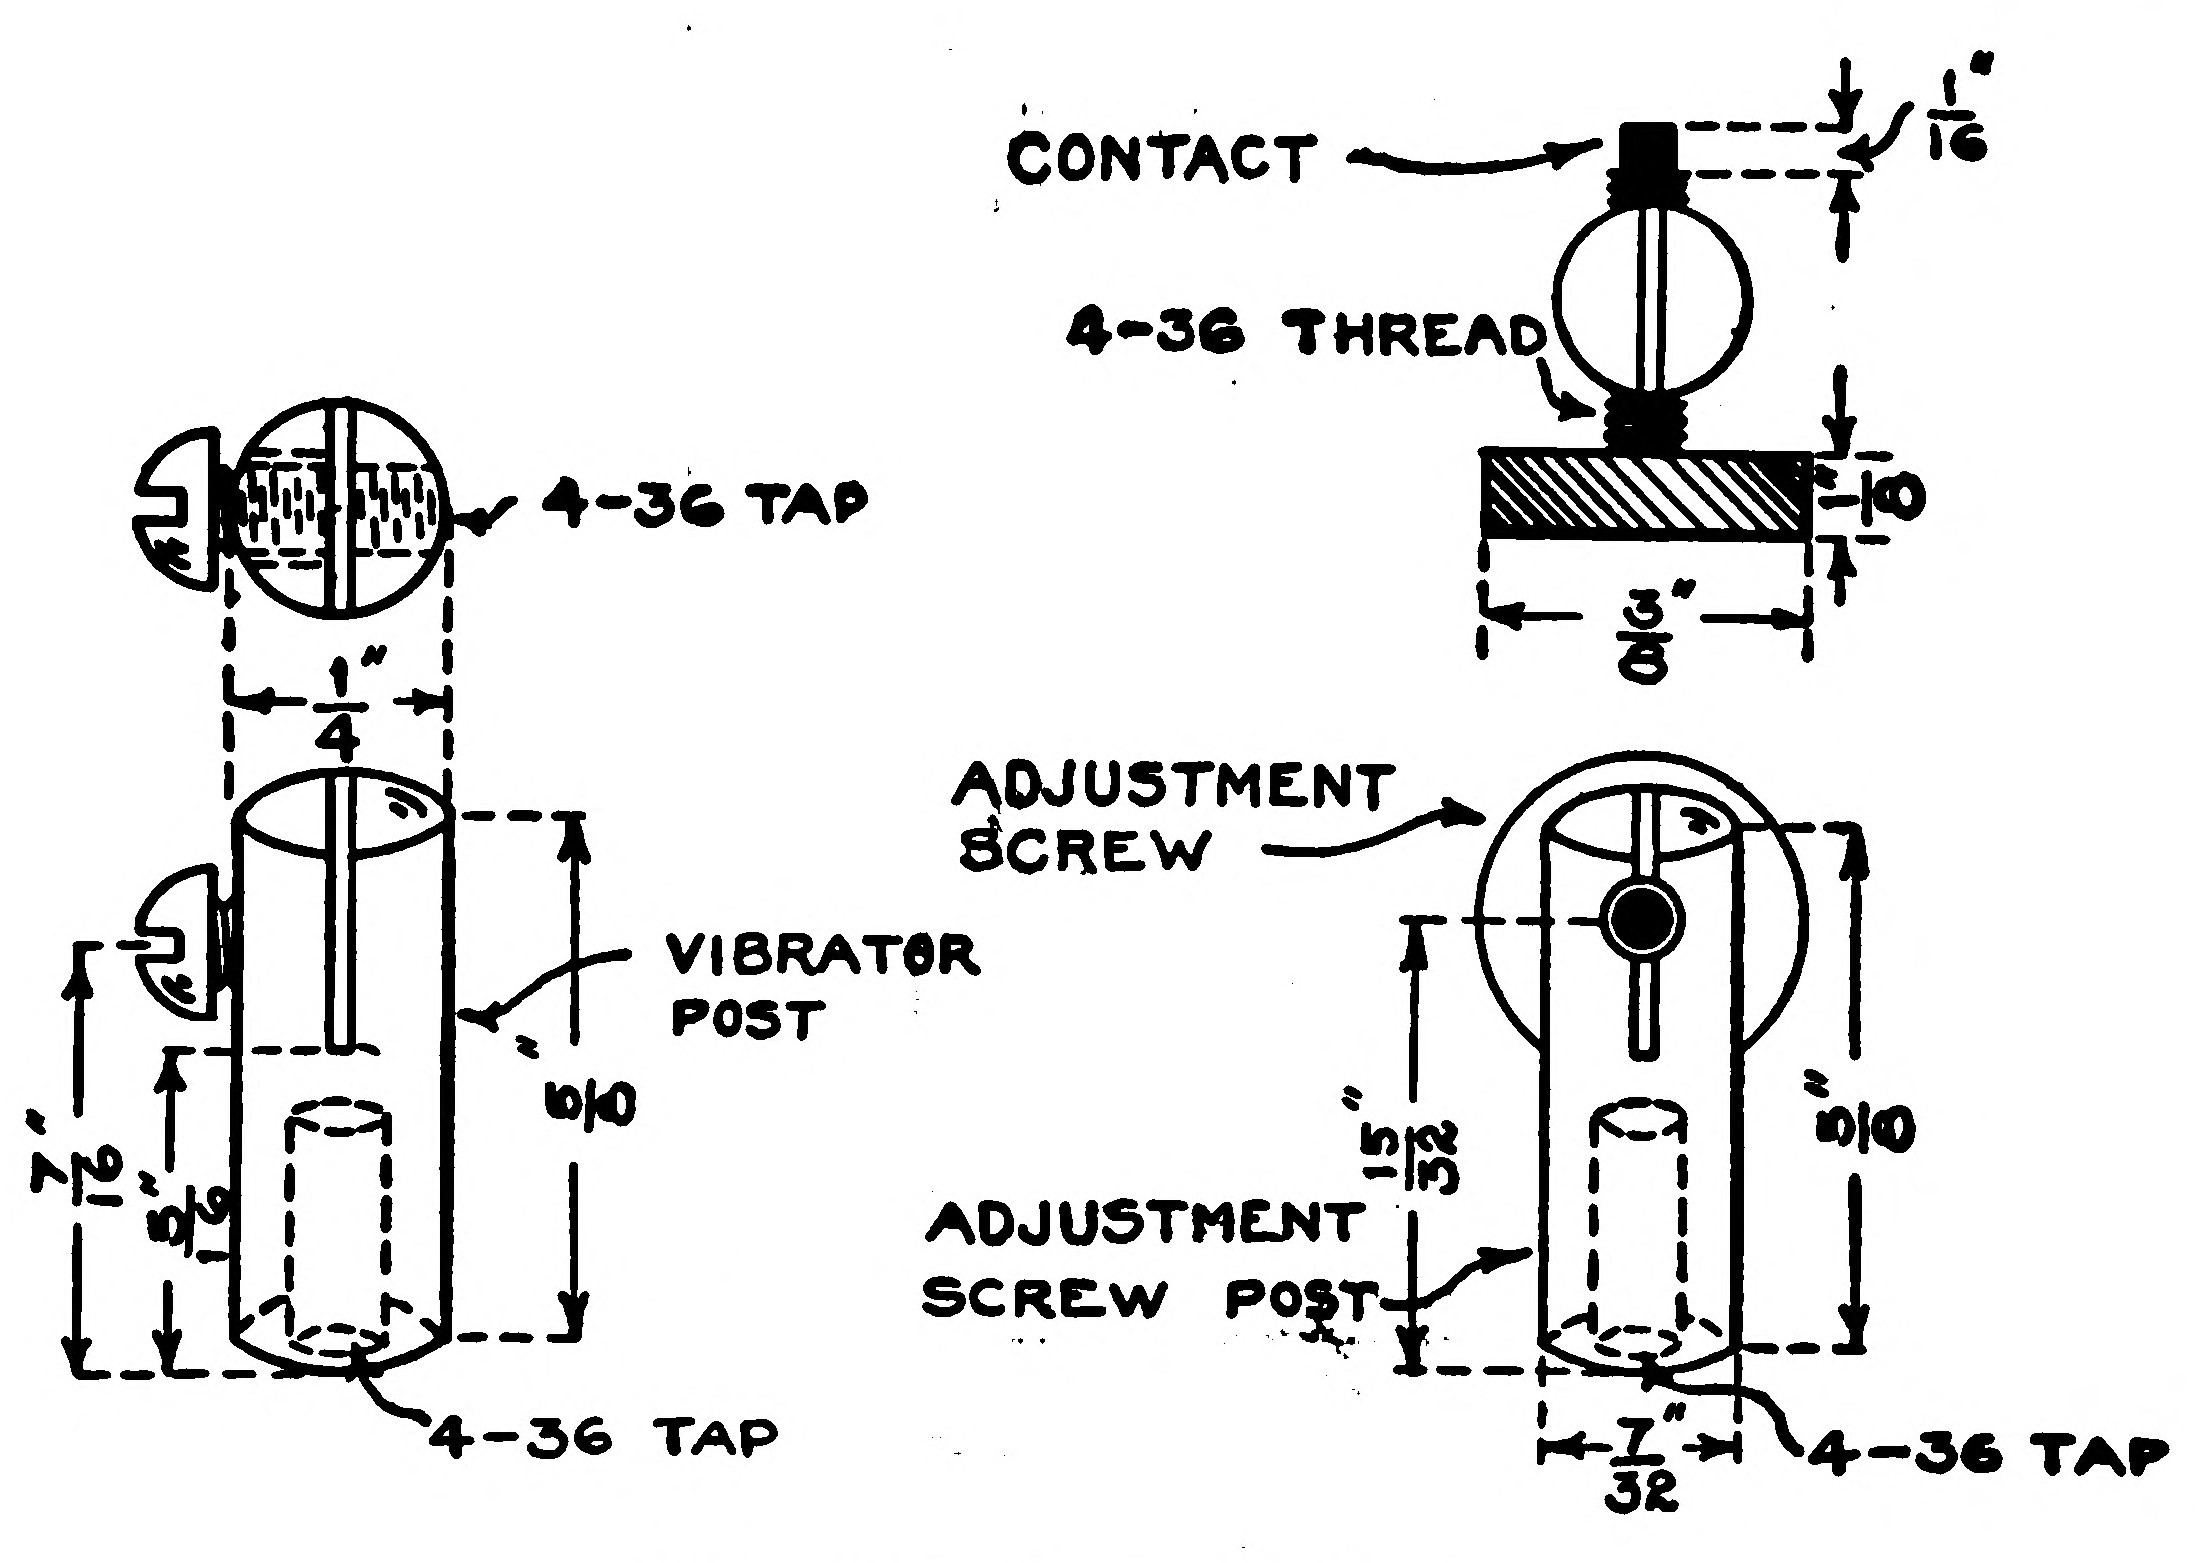 FIG. 106.—Vibrator Parts.